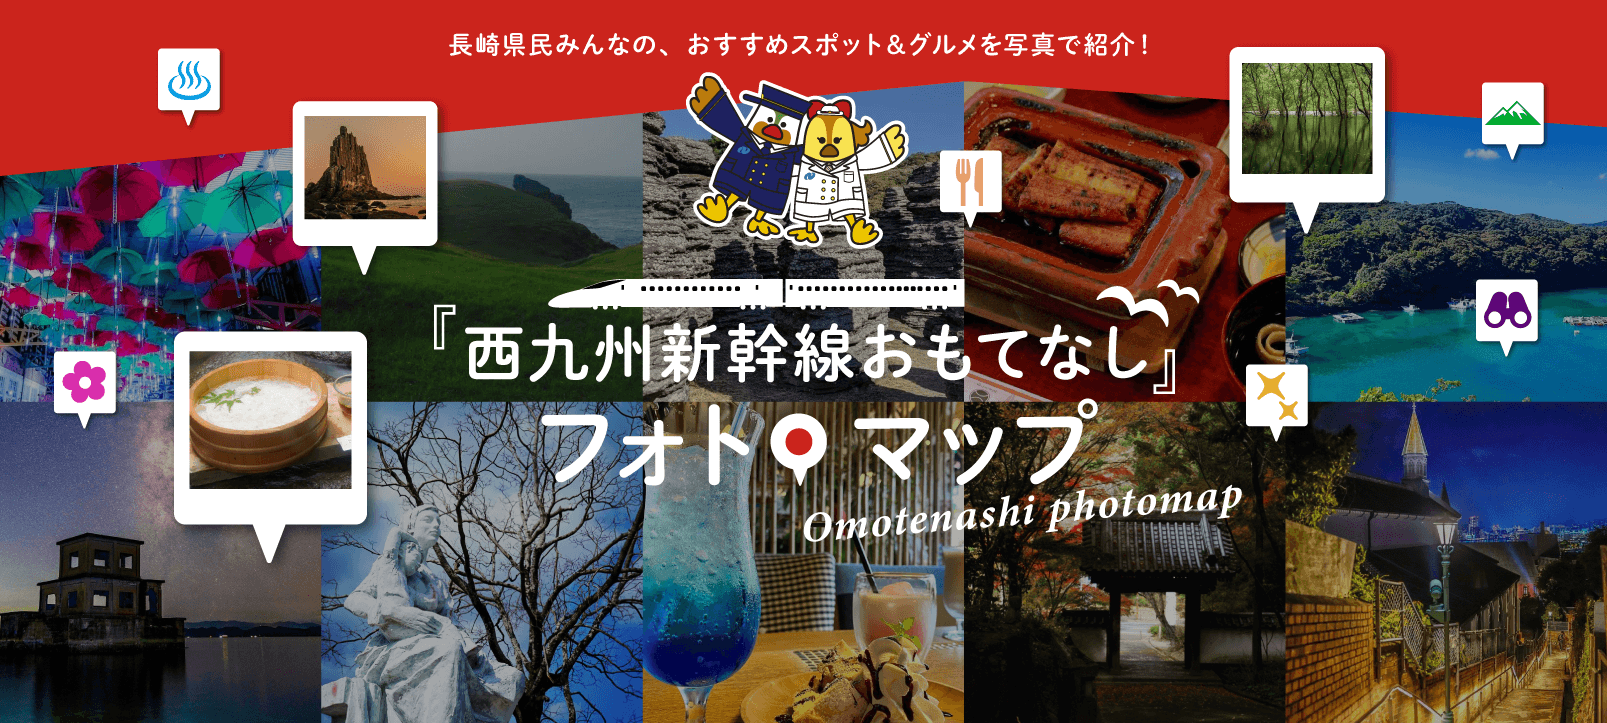 「西九州新幹線おもてなし」フォトマップ-1